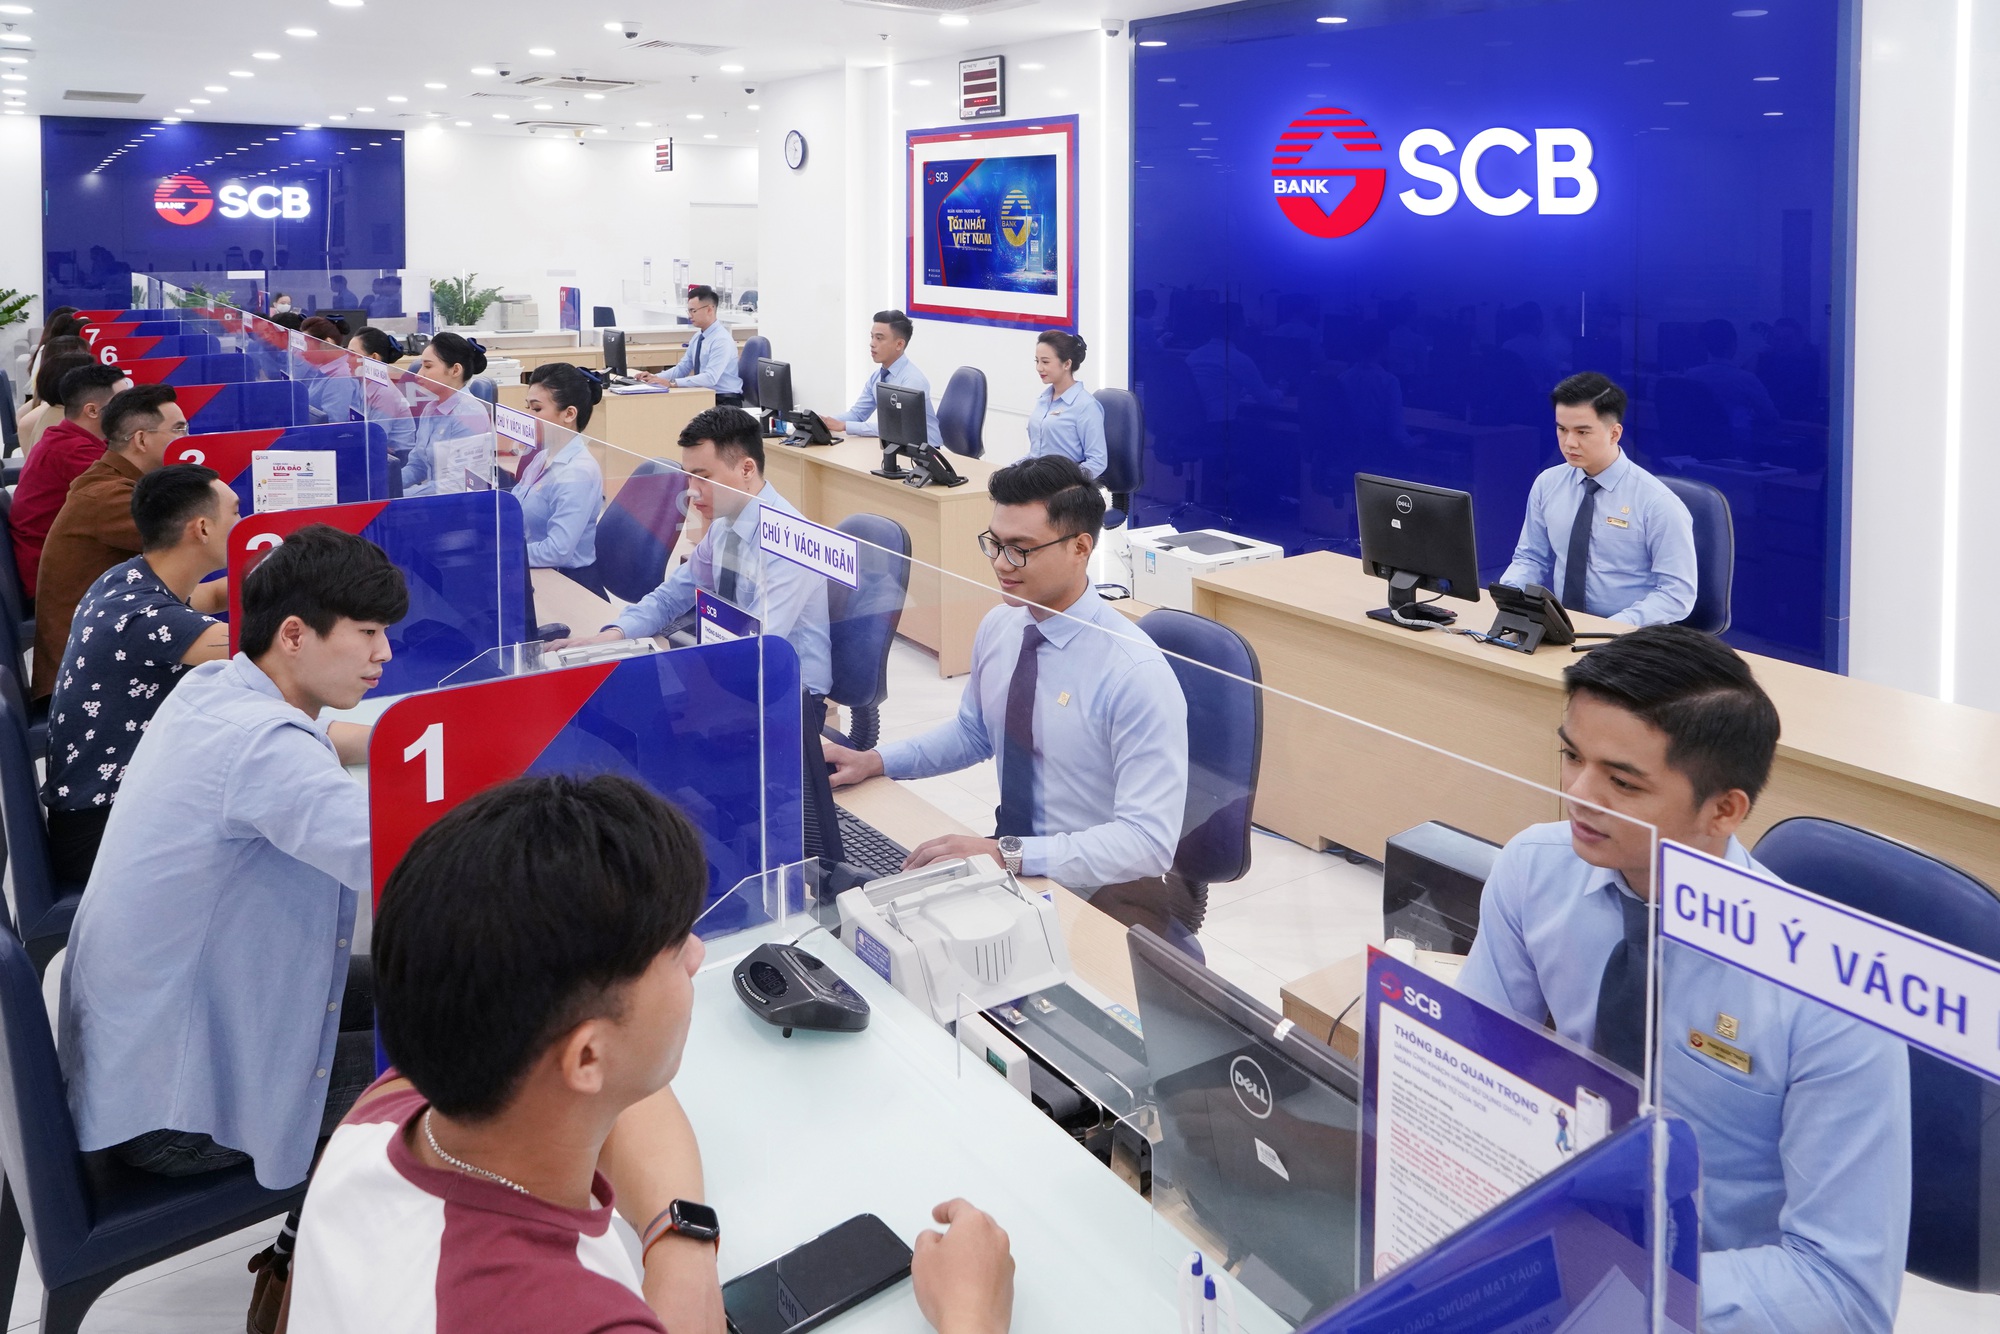 SCB hoạt động ổn định, tặng coupon lãi suất 0,5% cho khách hàng gửi tiền - Ảnh 2.